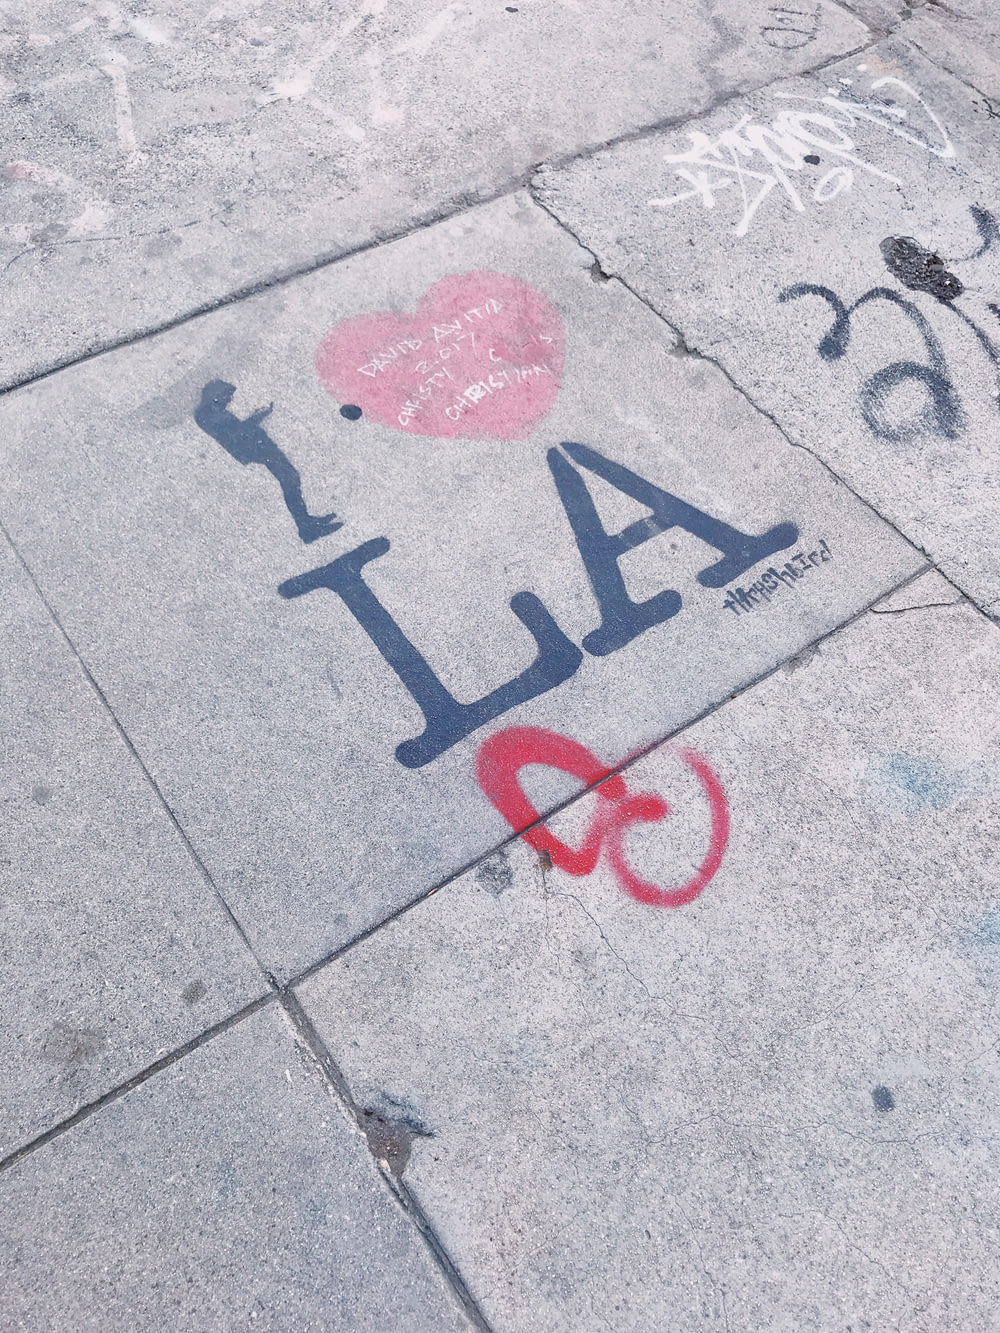 I heart LA graffiti on pavement